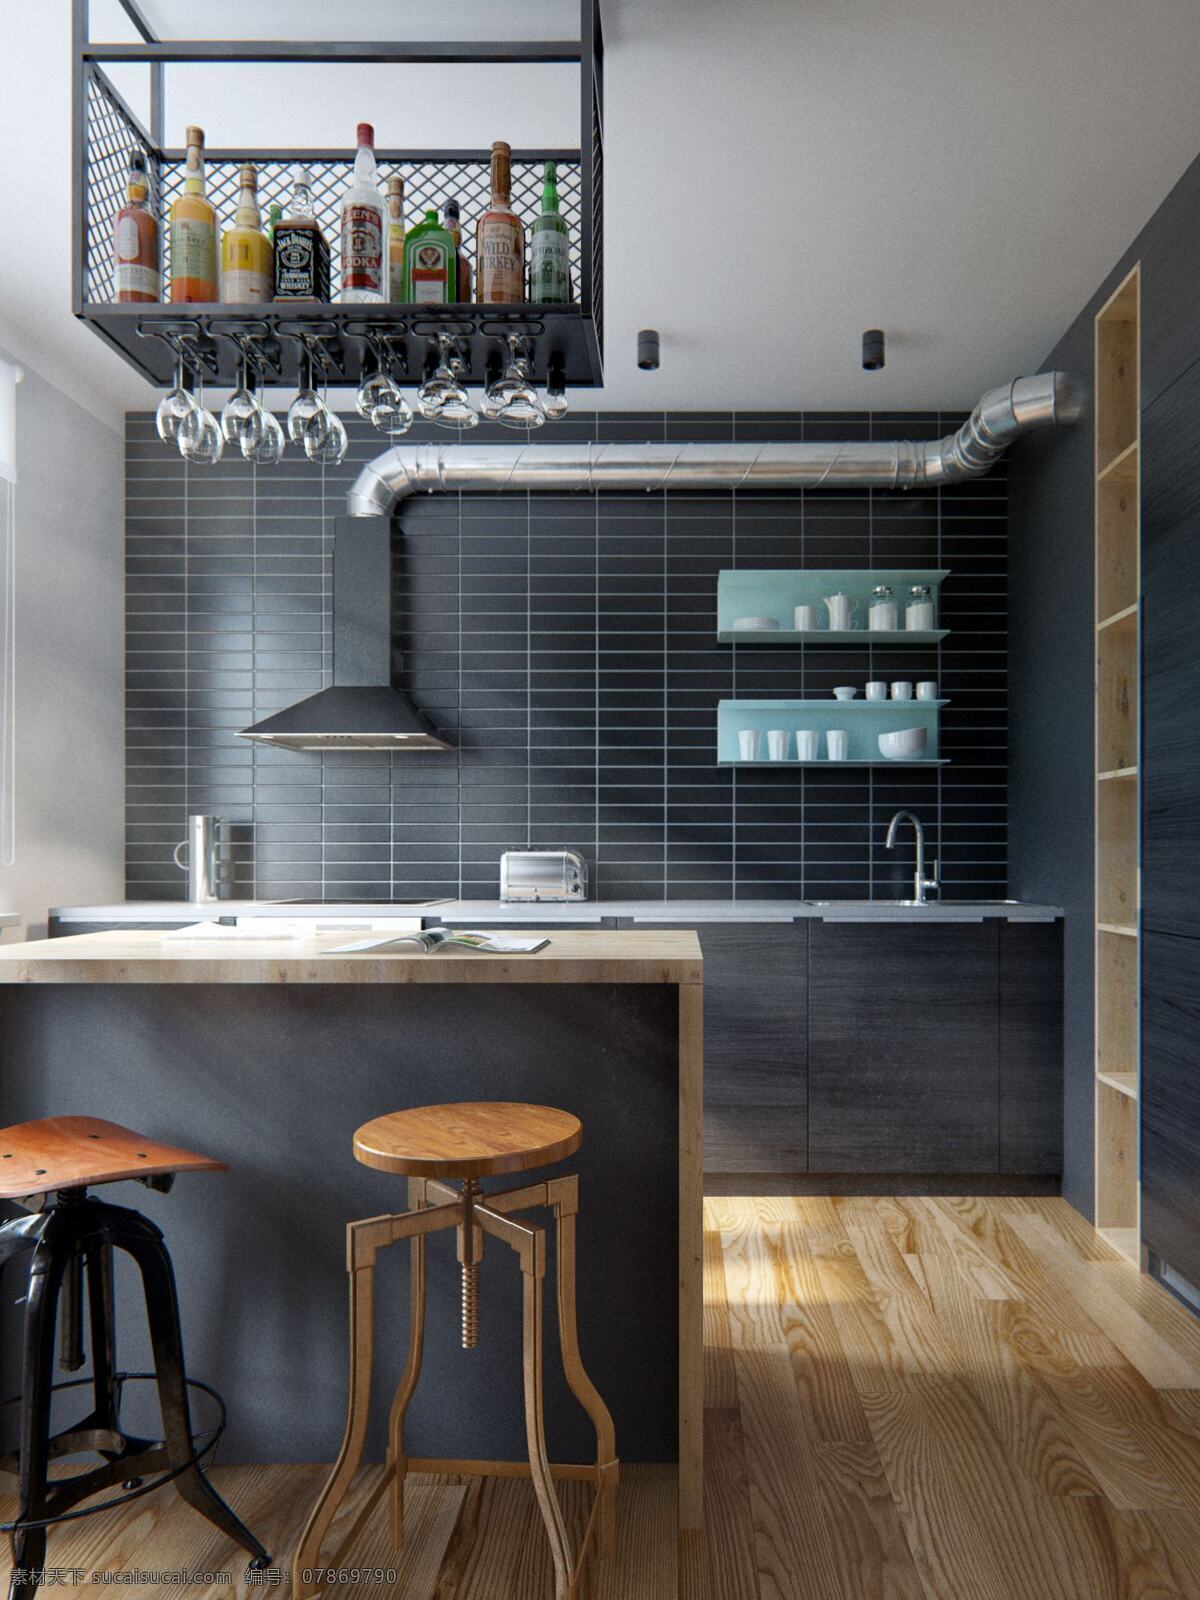 经典 大气 美式 厨房 黑色 砖墙 装修 效果图 时尚 高雅